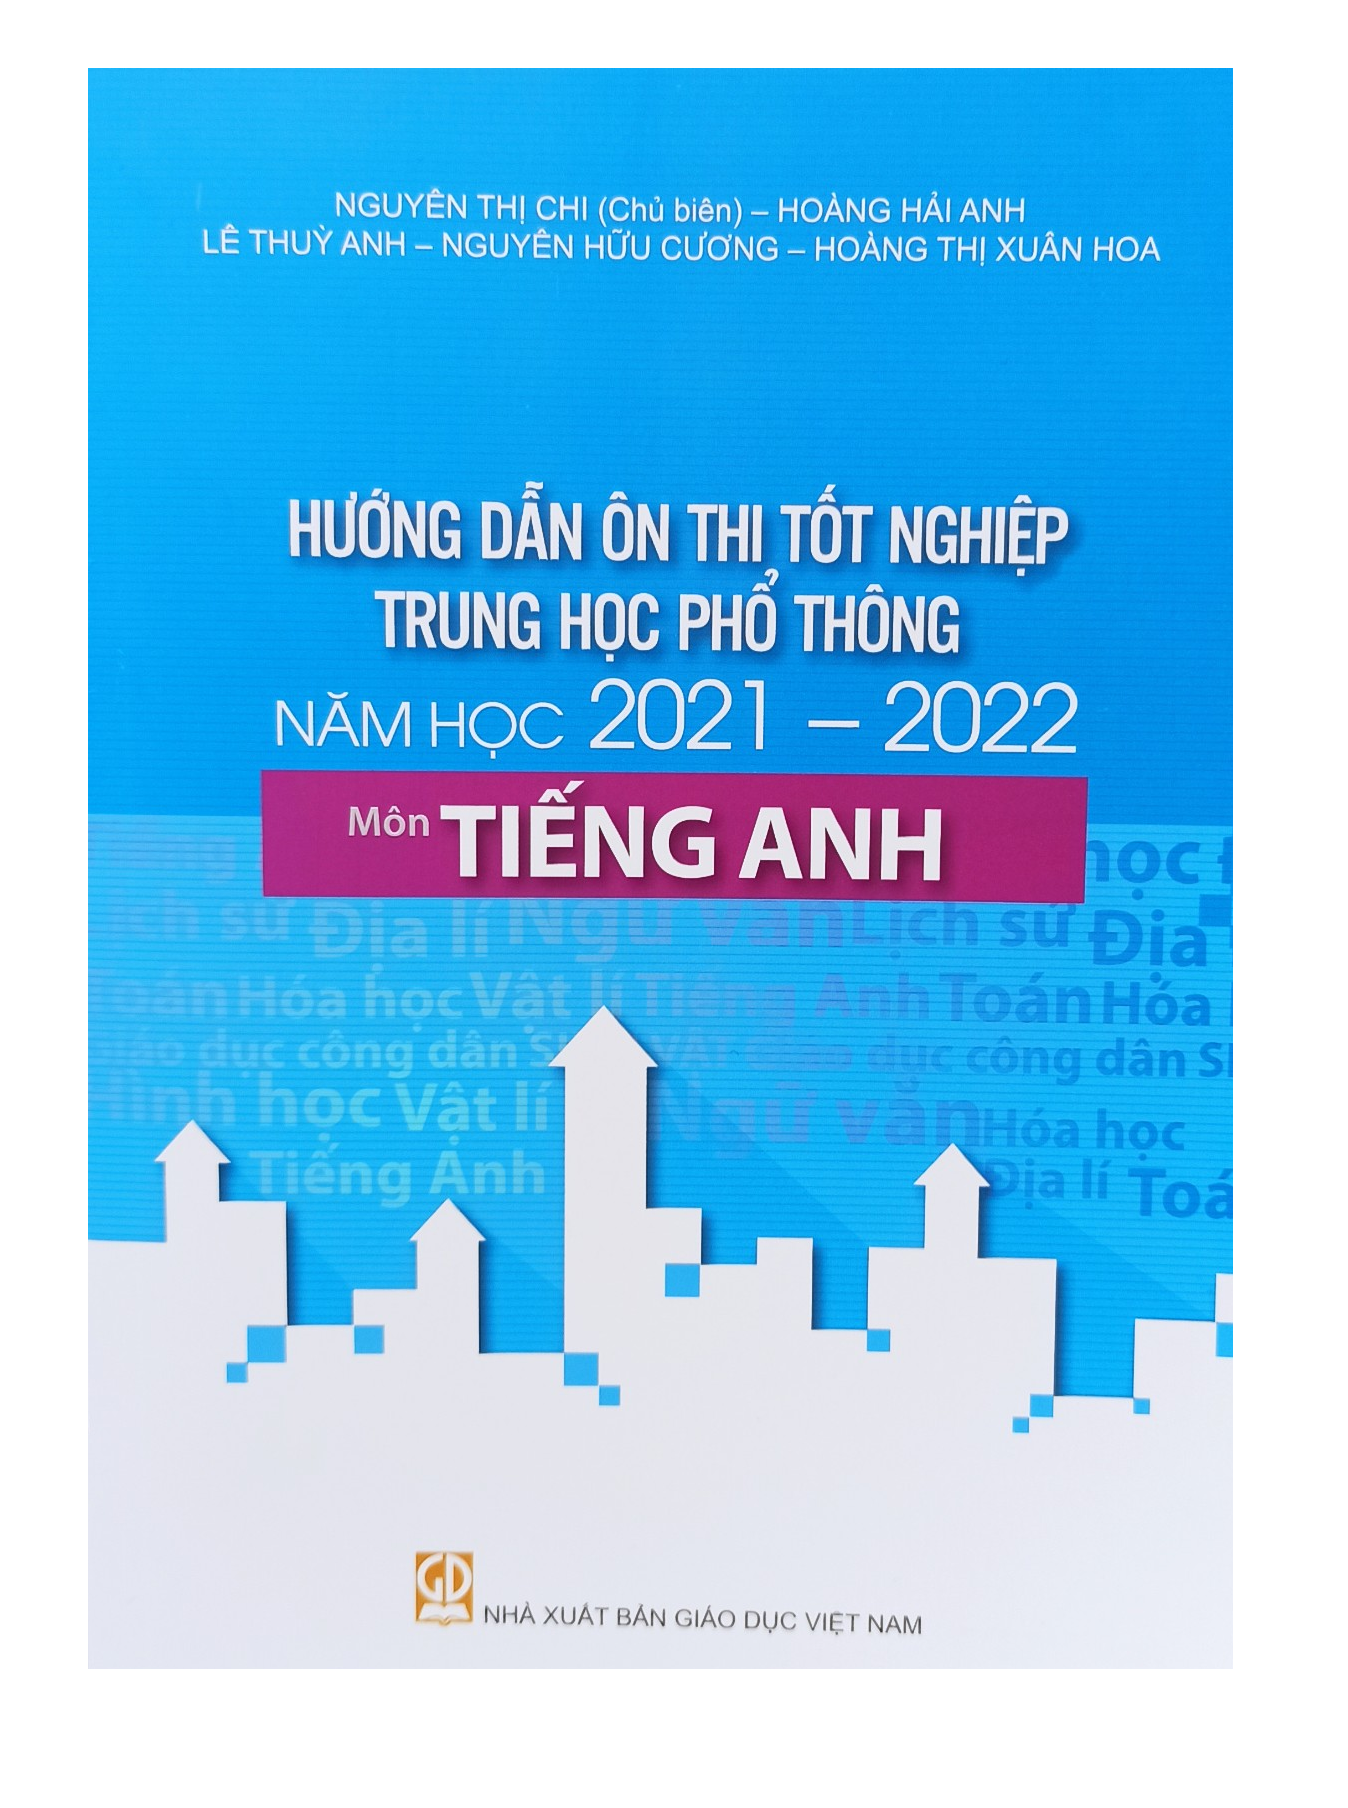 Hướng Dẫn Ôn Thi Tốt Nghiệp Trung Học Phổ Thông Môn Tiếng Anh năm 2021-2022 (Giảm 20%)